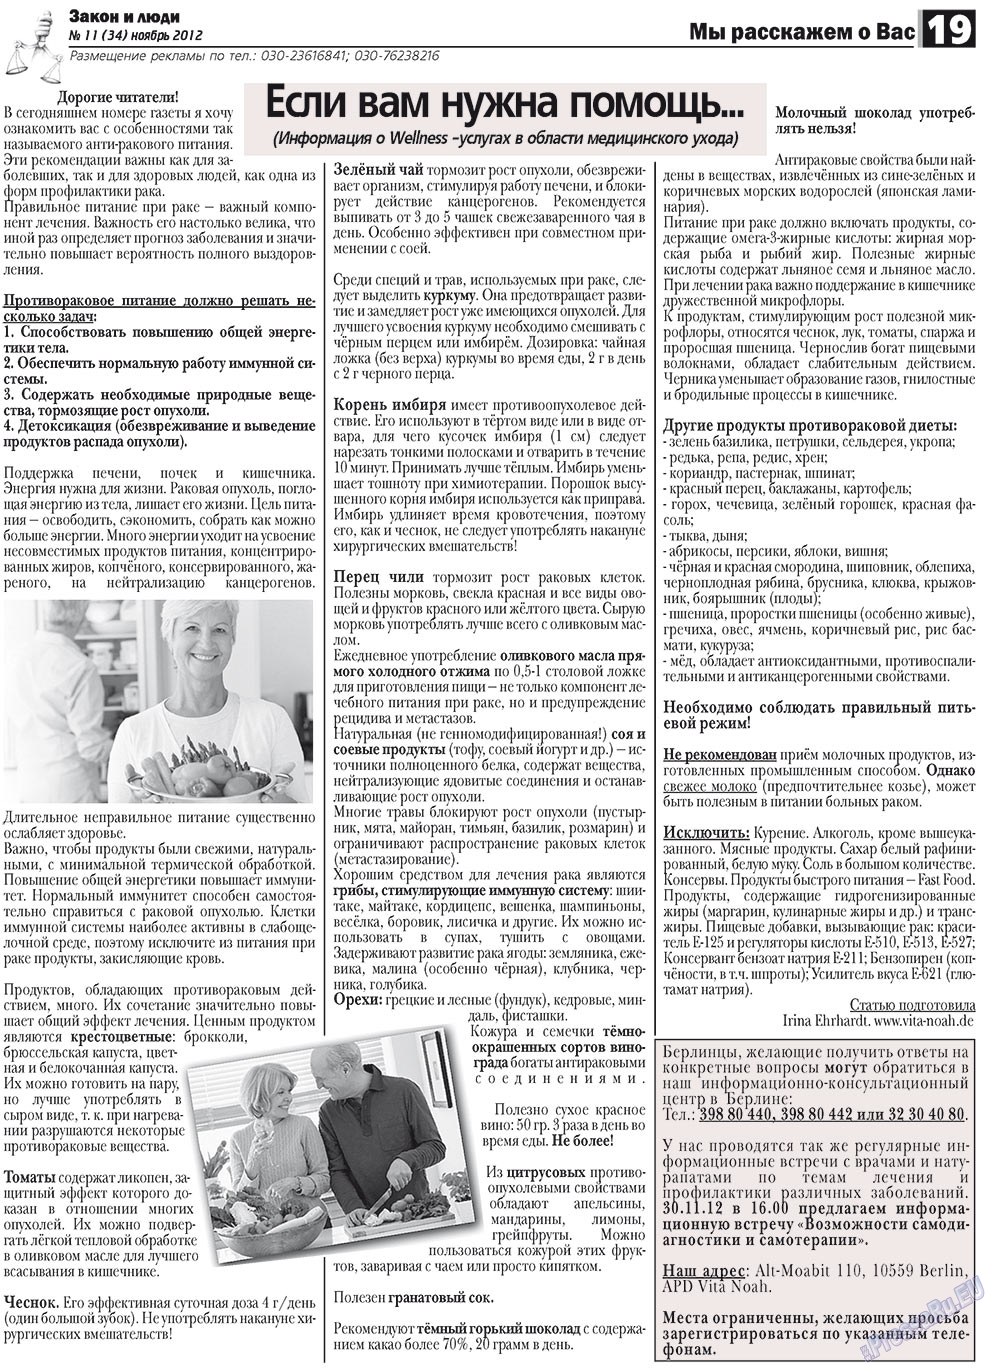 Закон и люди, газета. 2012 №11 стр.19